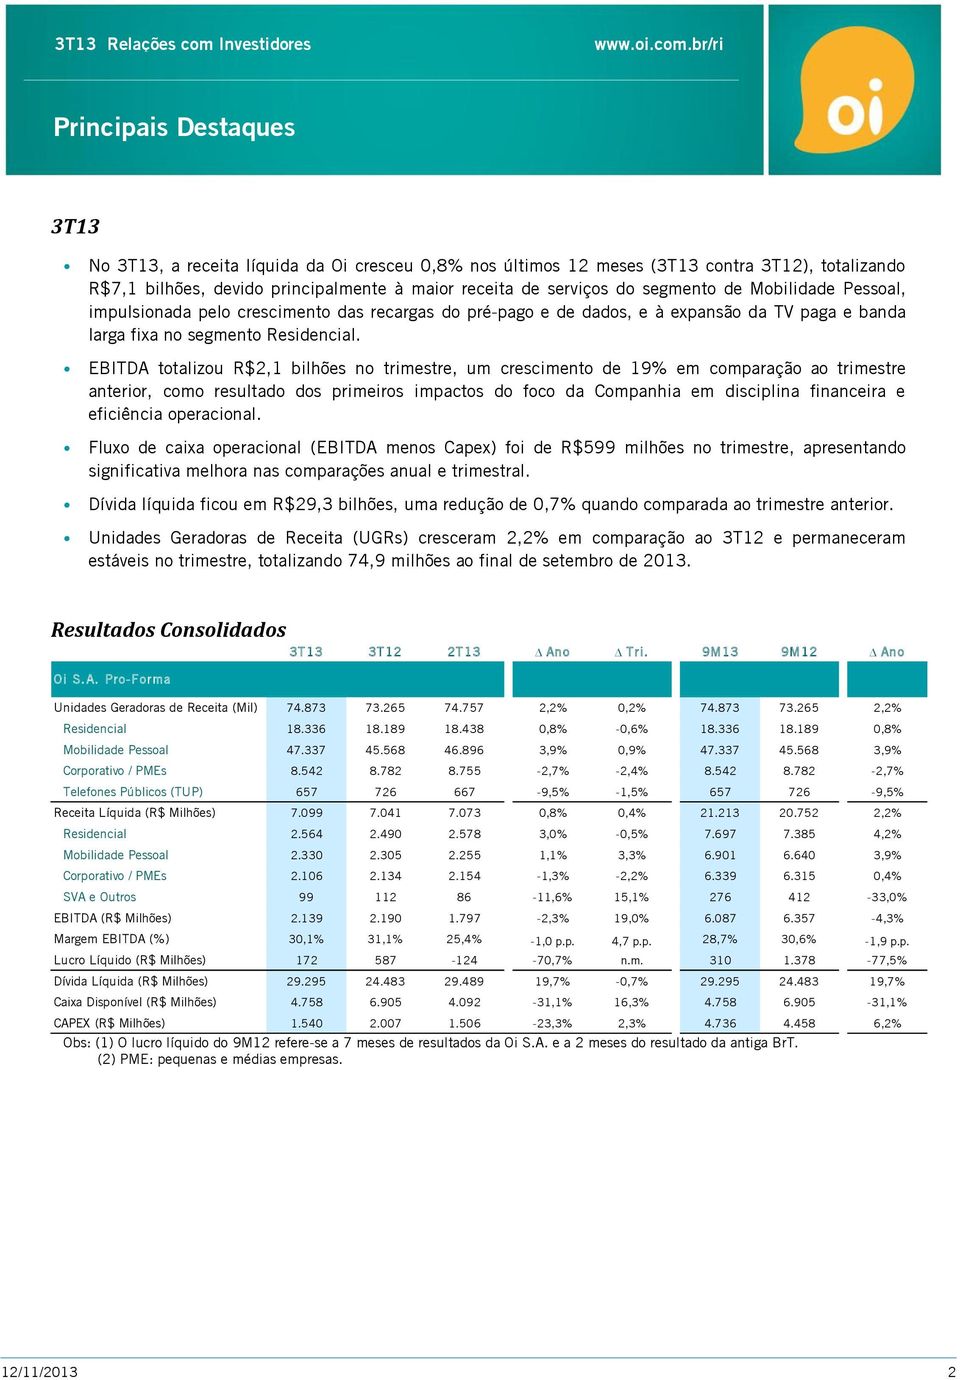 EBITDA totalizou R$2,1 bilhões no trimestre, um crescimento de 19% em comparação ao trimestre anterior, como resultado dos primeiros impactos do foco da Companhia em disciplina financeira e